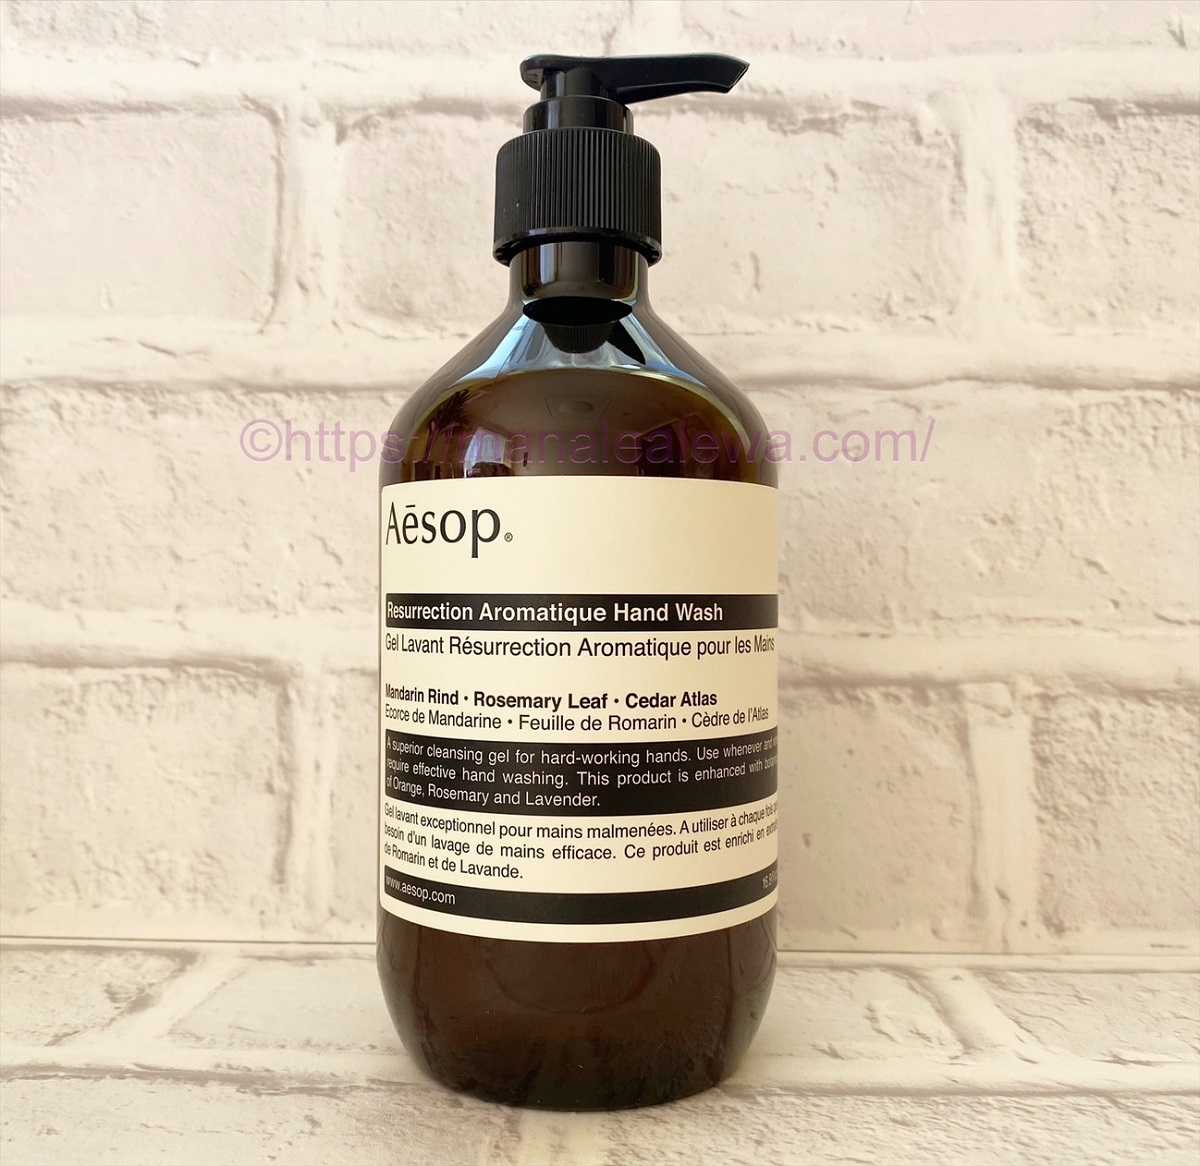 Aesop-resurrection-aromatique-hand-wash